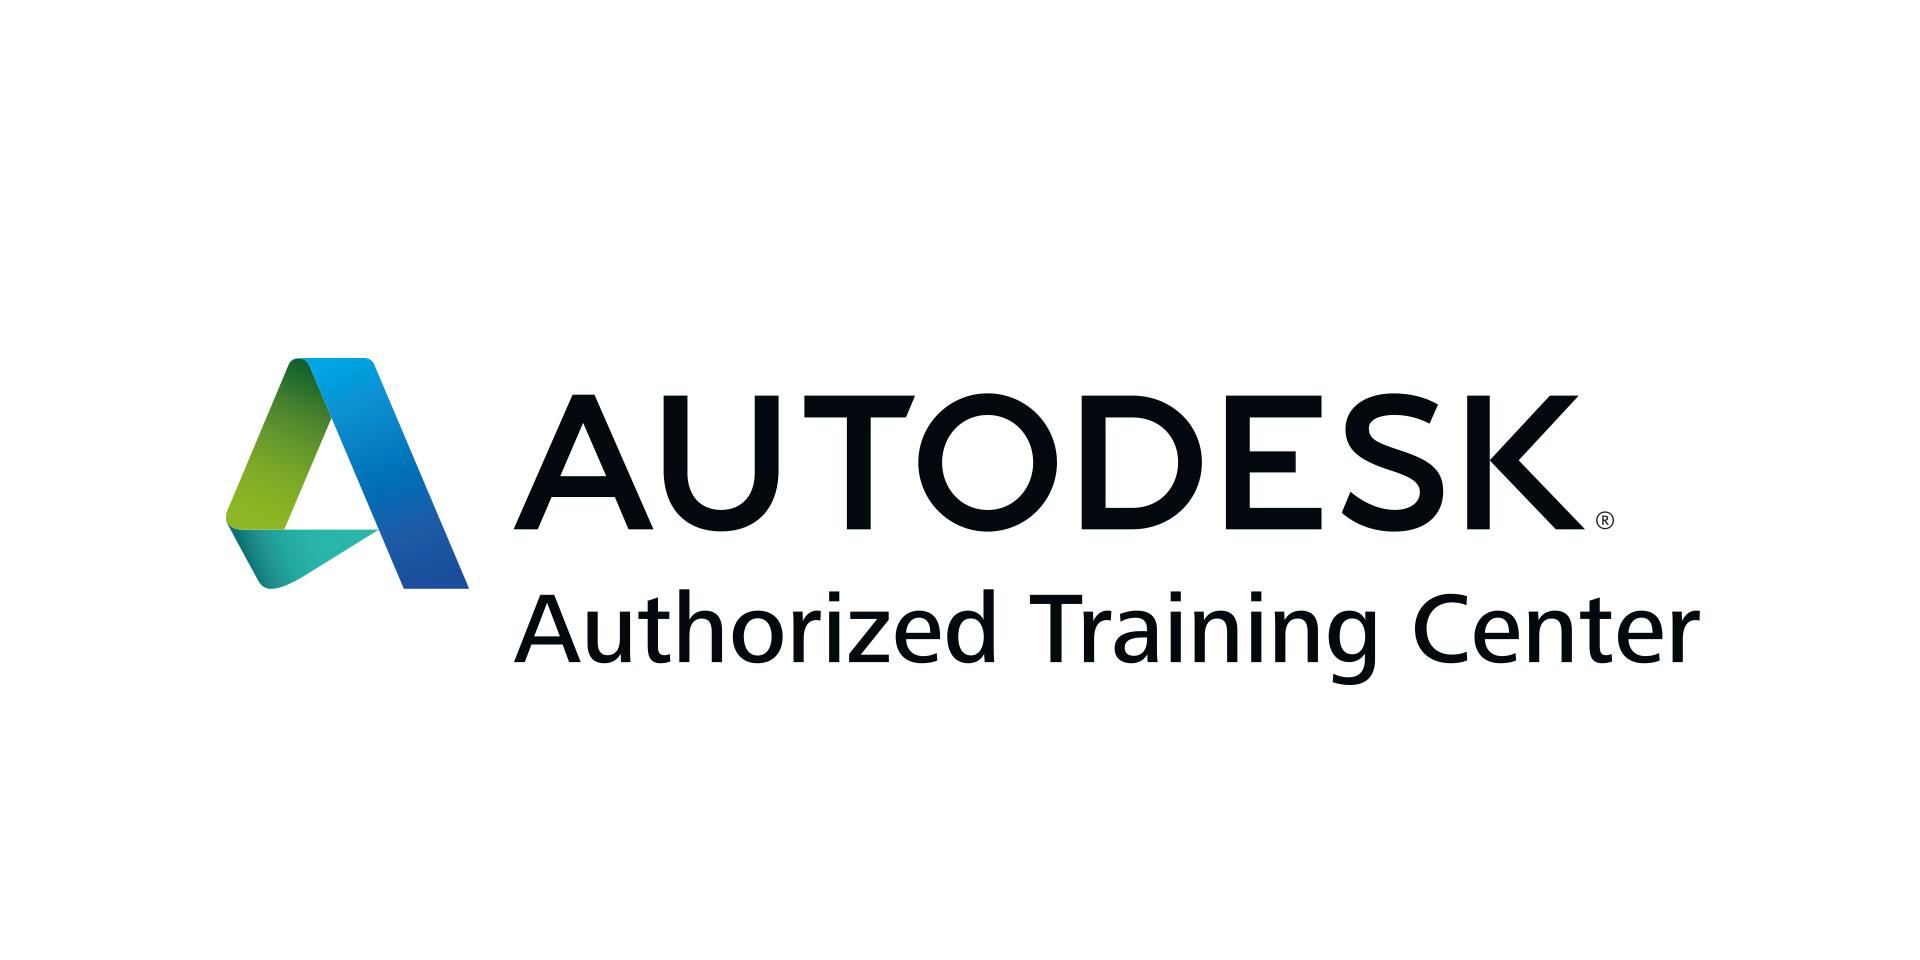 Autodesk Logo - Autodesk | $ADSK Stock | Shares Rocket Higher On Earnings Beat ...